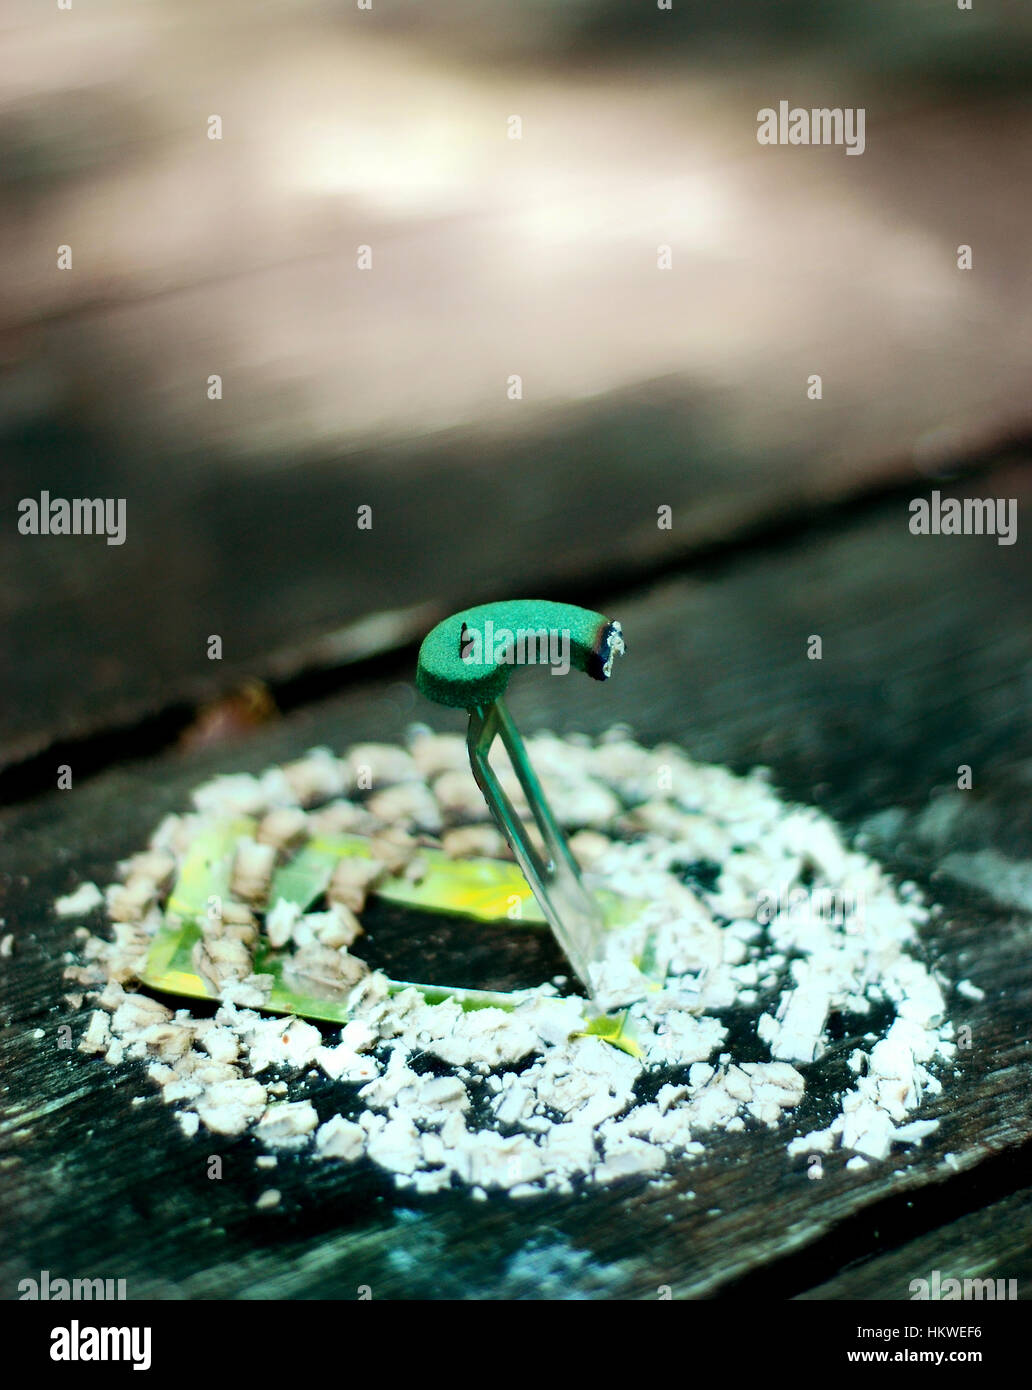 A ausgebrannt Mücke Spule auf einem Picknick-Tisch Stockfoto